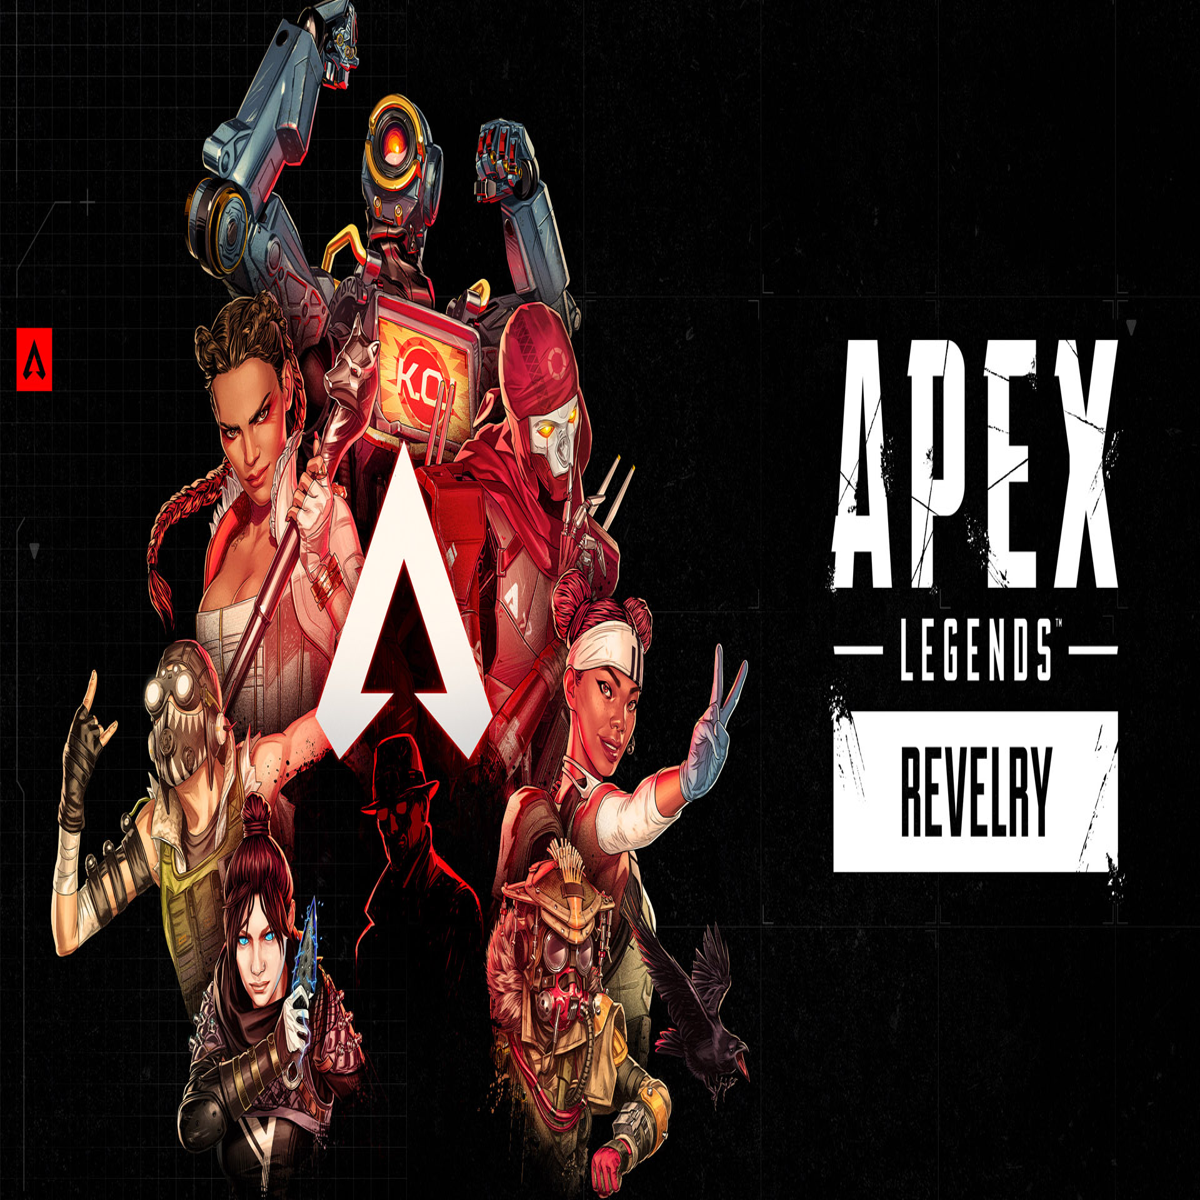 Apex Legends Season 19: Apex Legends Season 19: Check out release